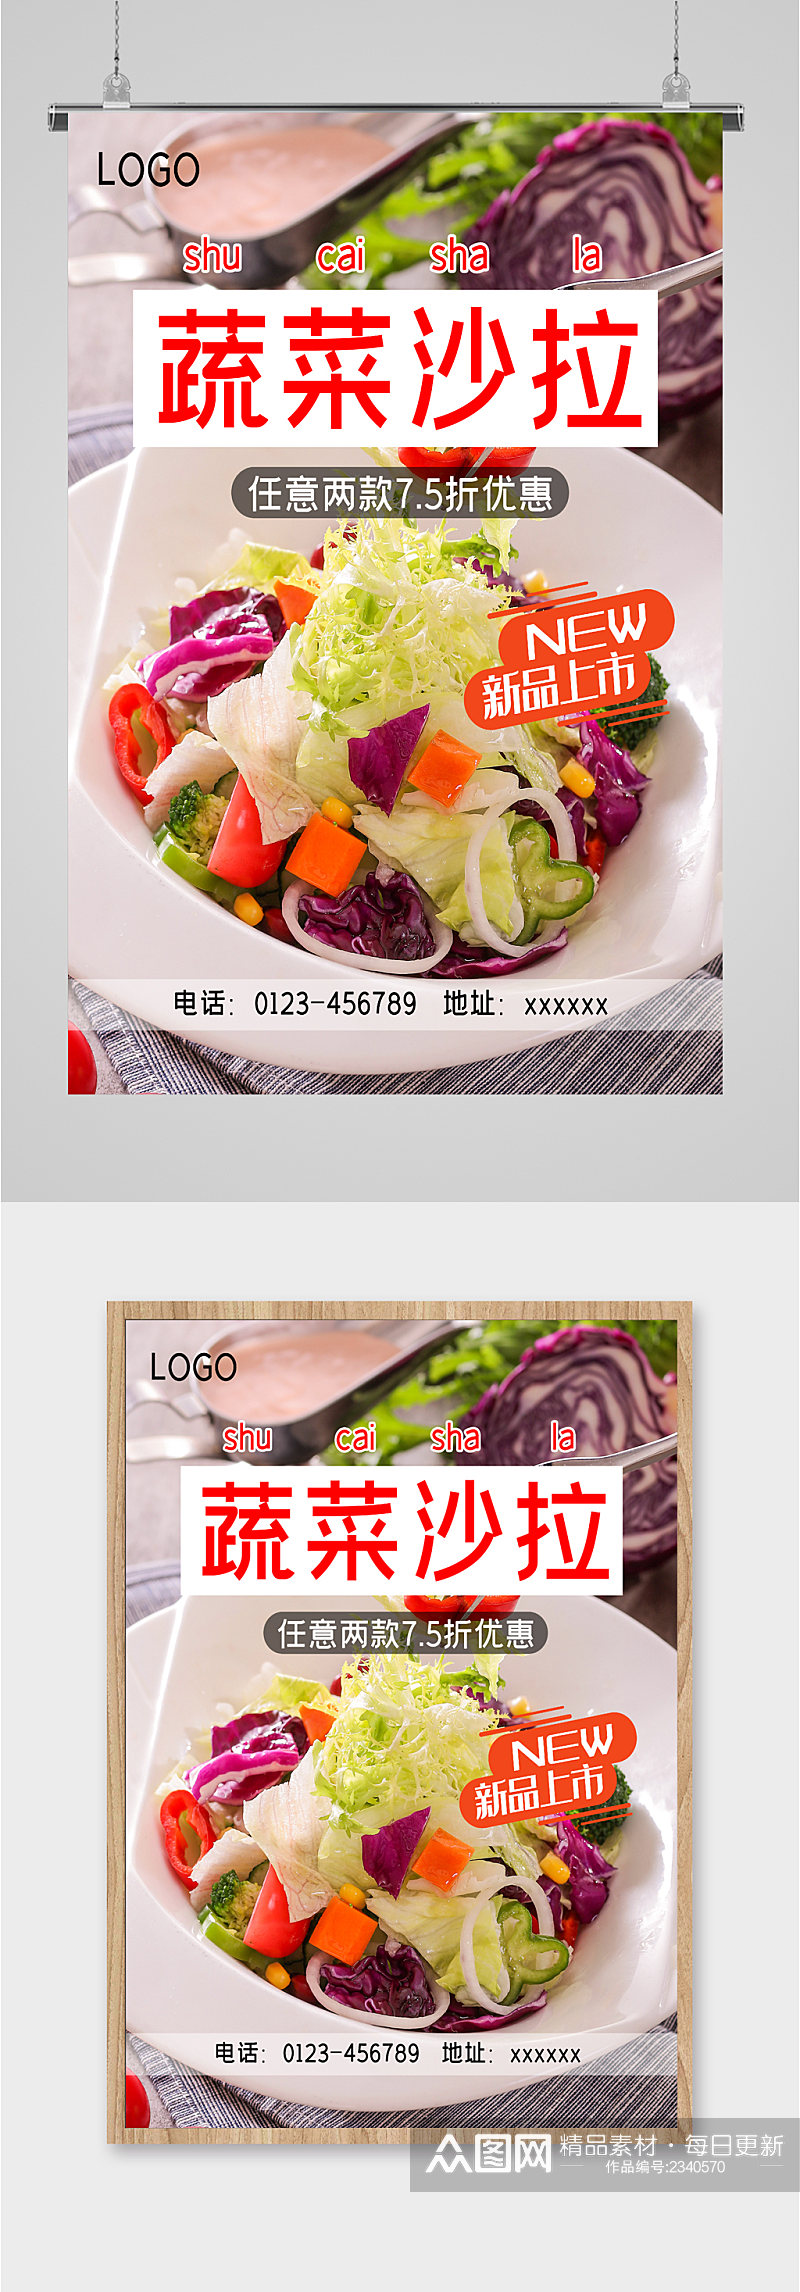 蔬菜沙拉美食海报素材